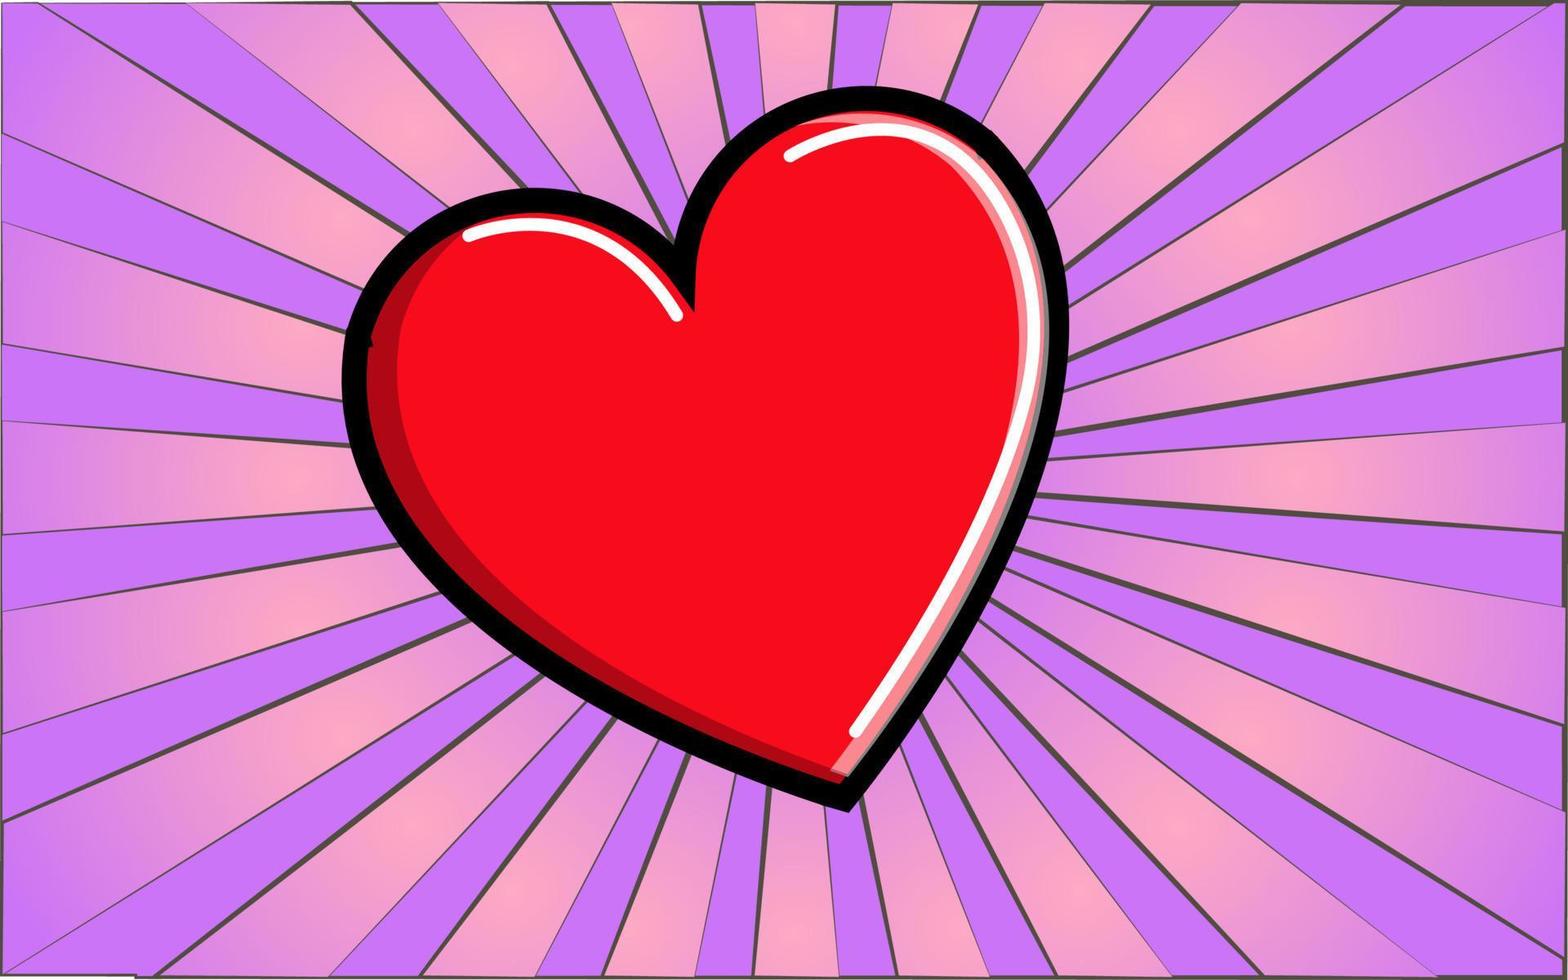 coração vermelho médico como um símbolo de saúde em um fundo de raios roxos abstratos. ilustração vetorial vetor